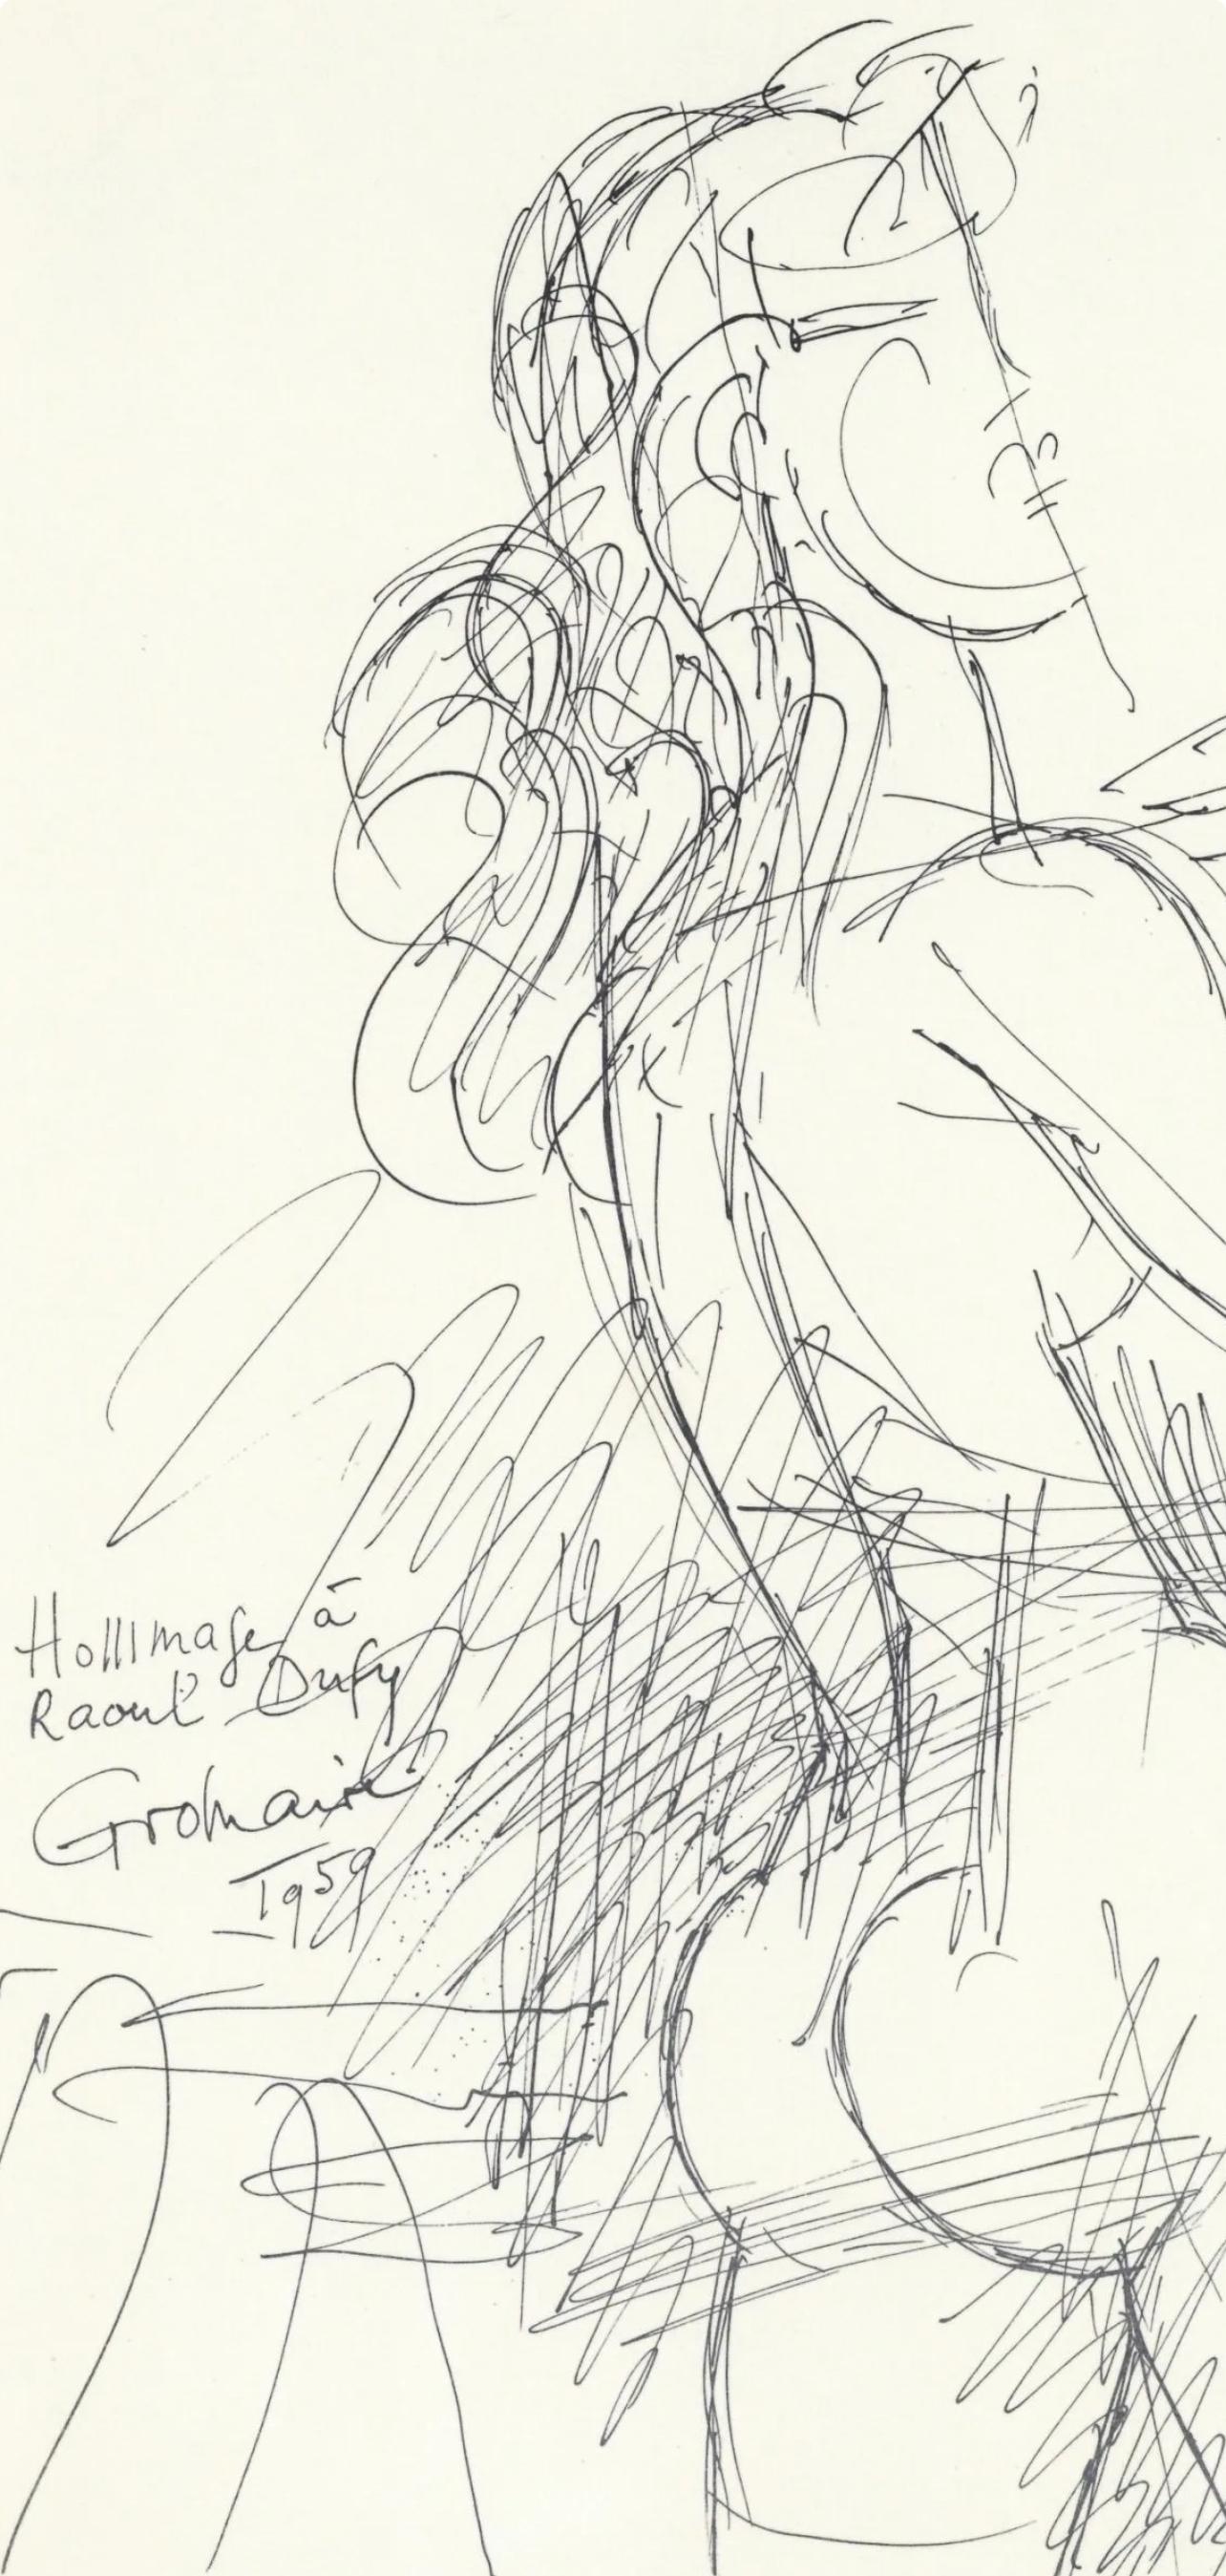 Gromaire, Dessin, Lettre à mon peintre Raoul Dufy (nach) (Moderne), Print, von Marcel Gromaire